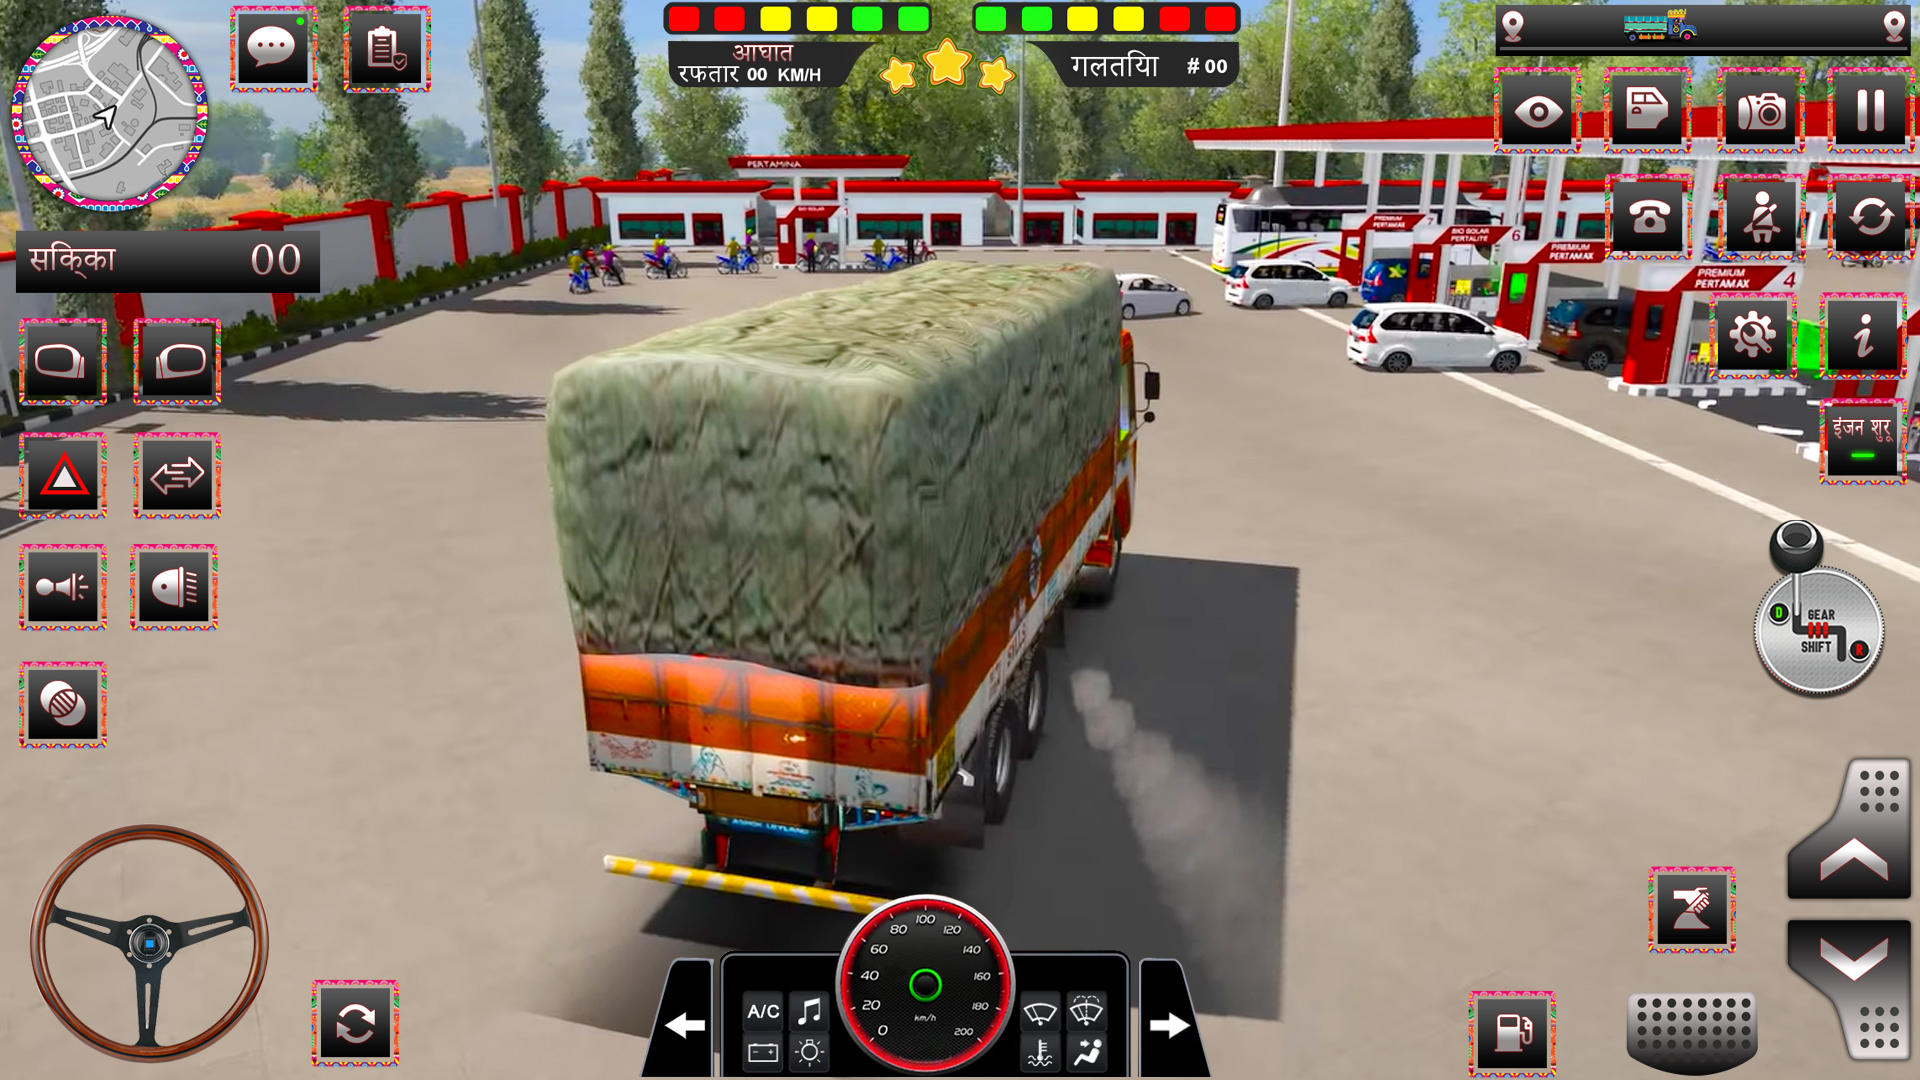 Download do APK de carga caminhão Dirigindo jogo para Android